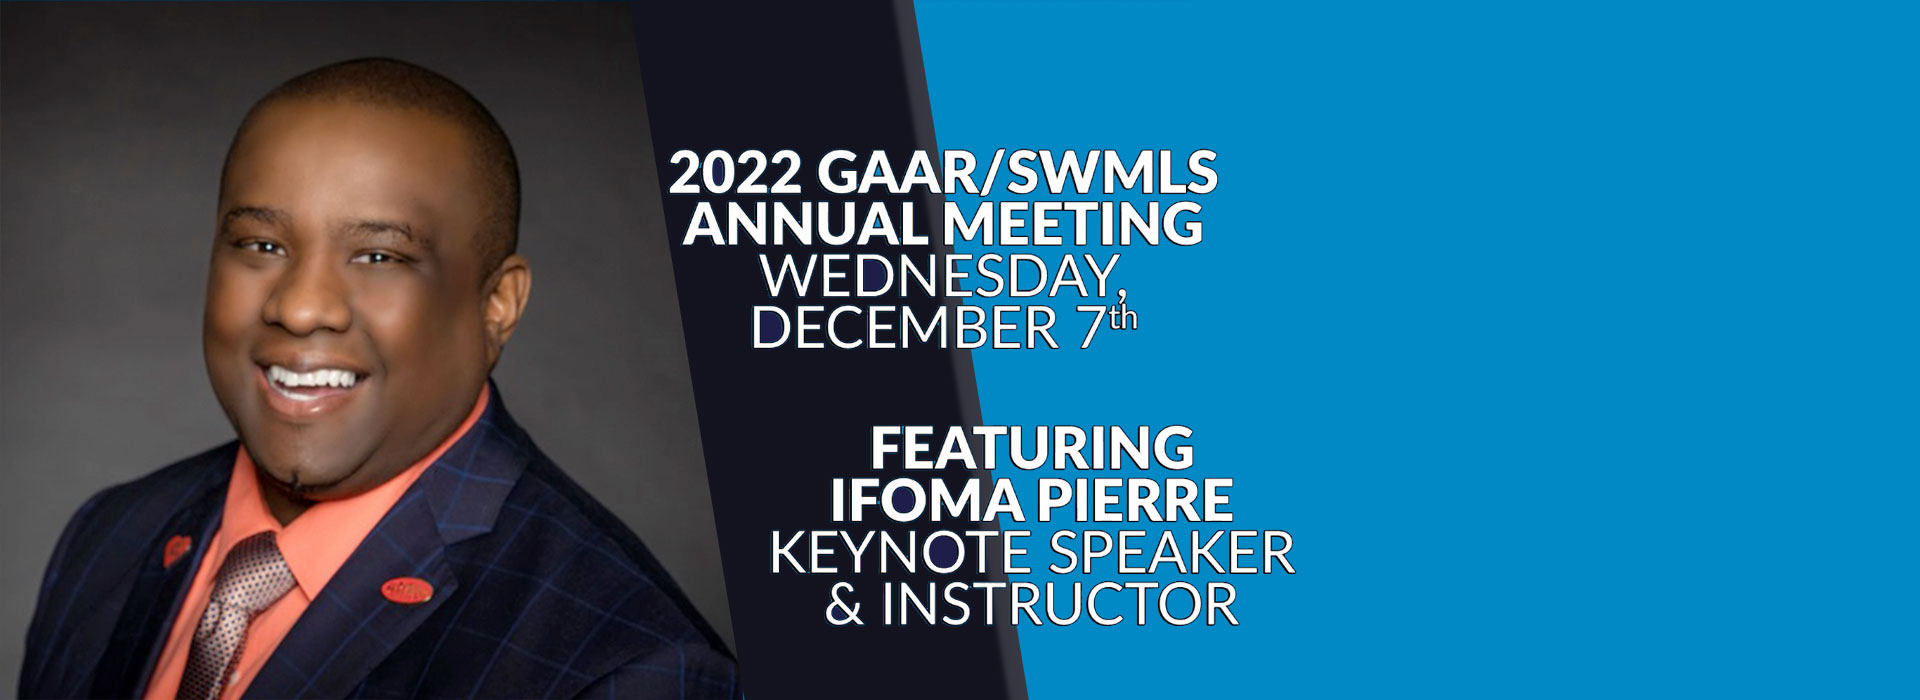 2022 GAAR/SWMLS Annual Meeting